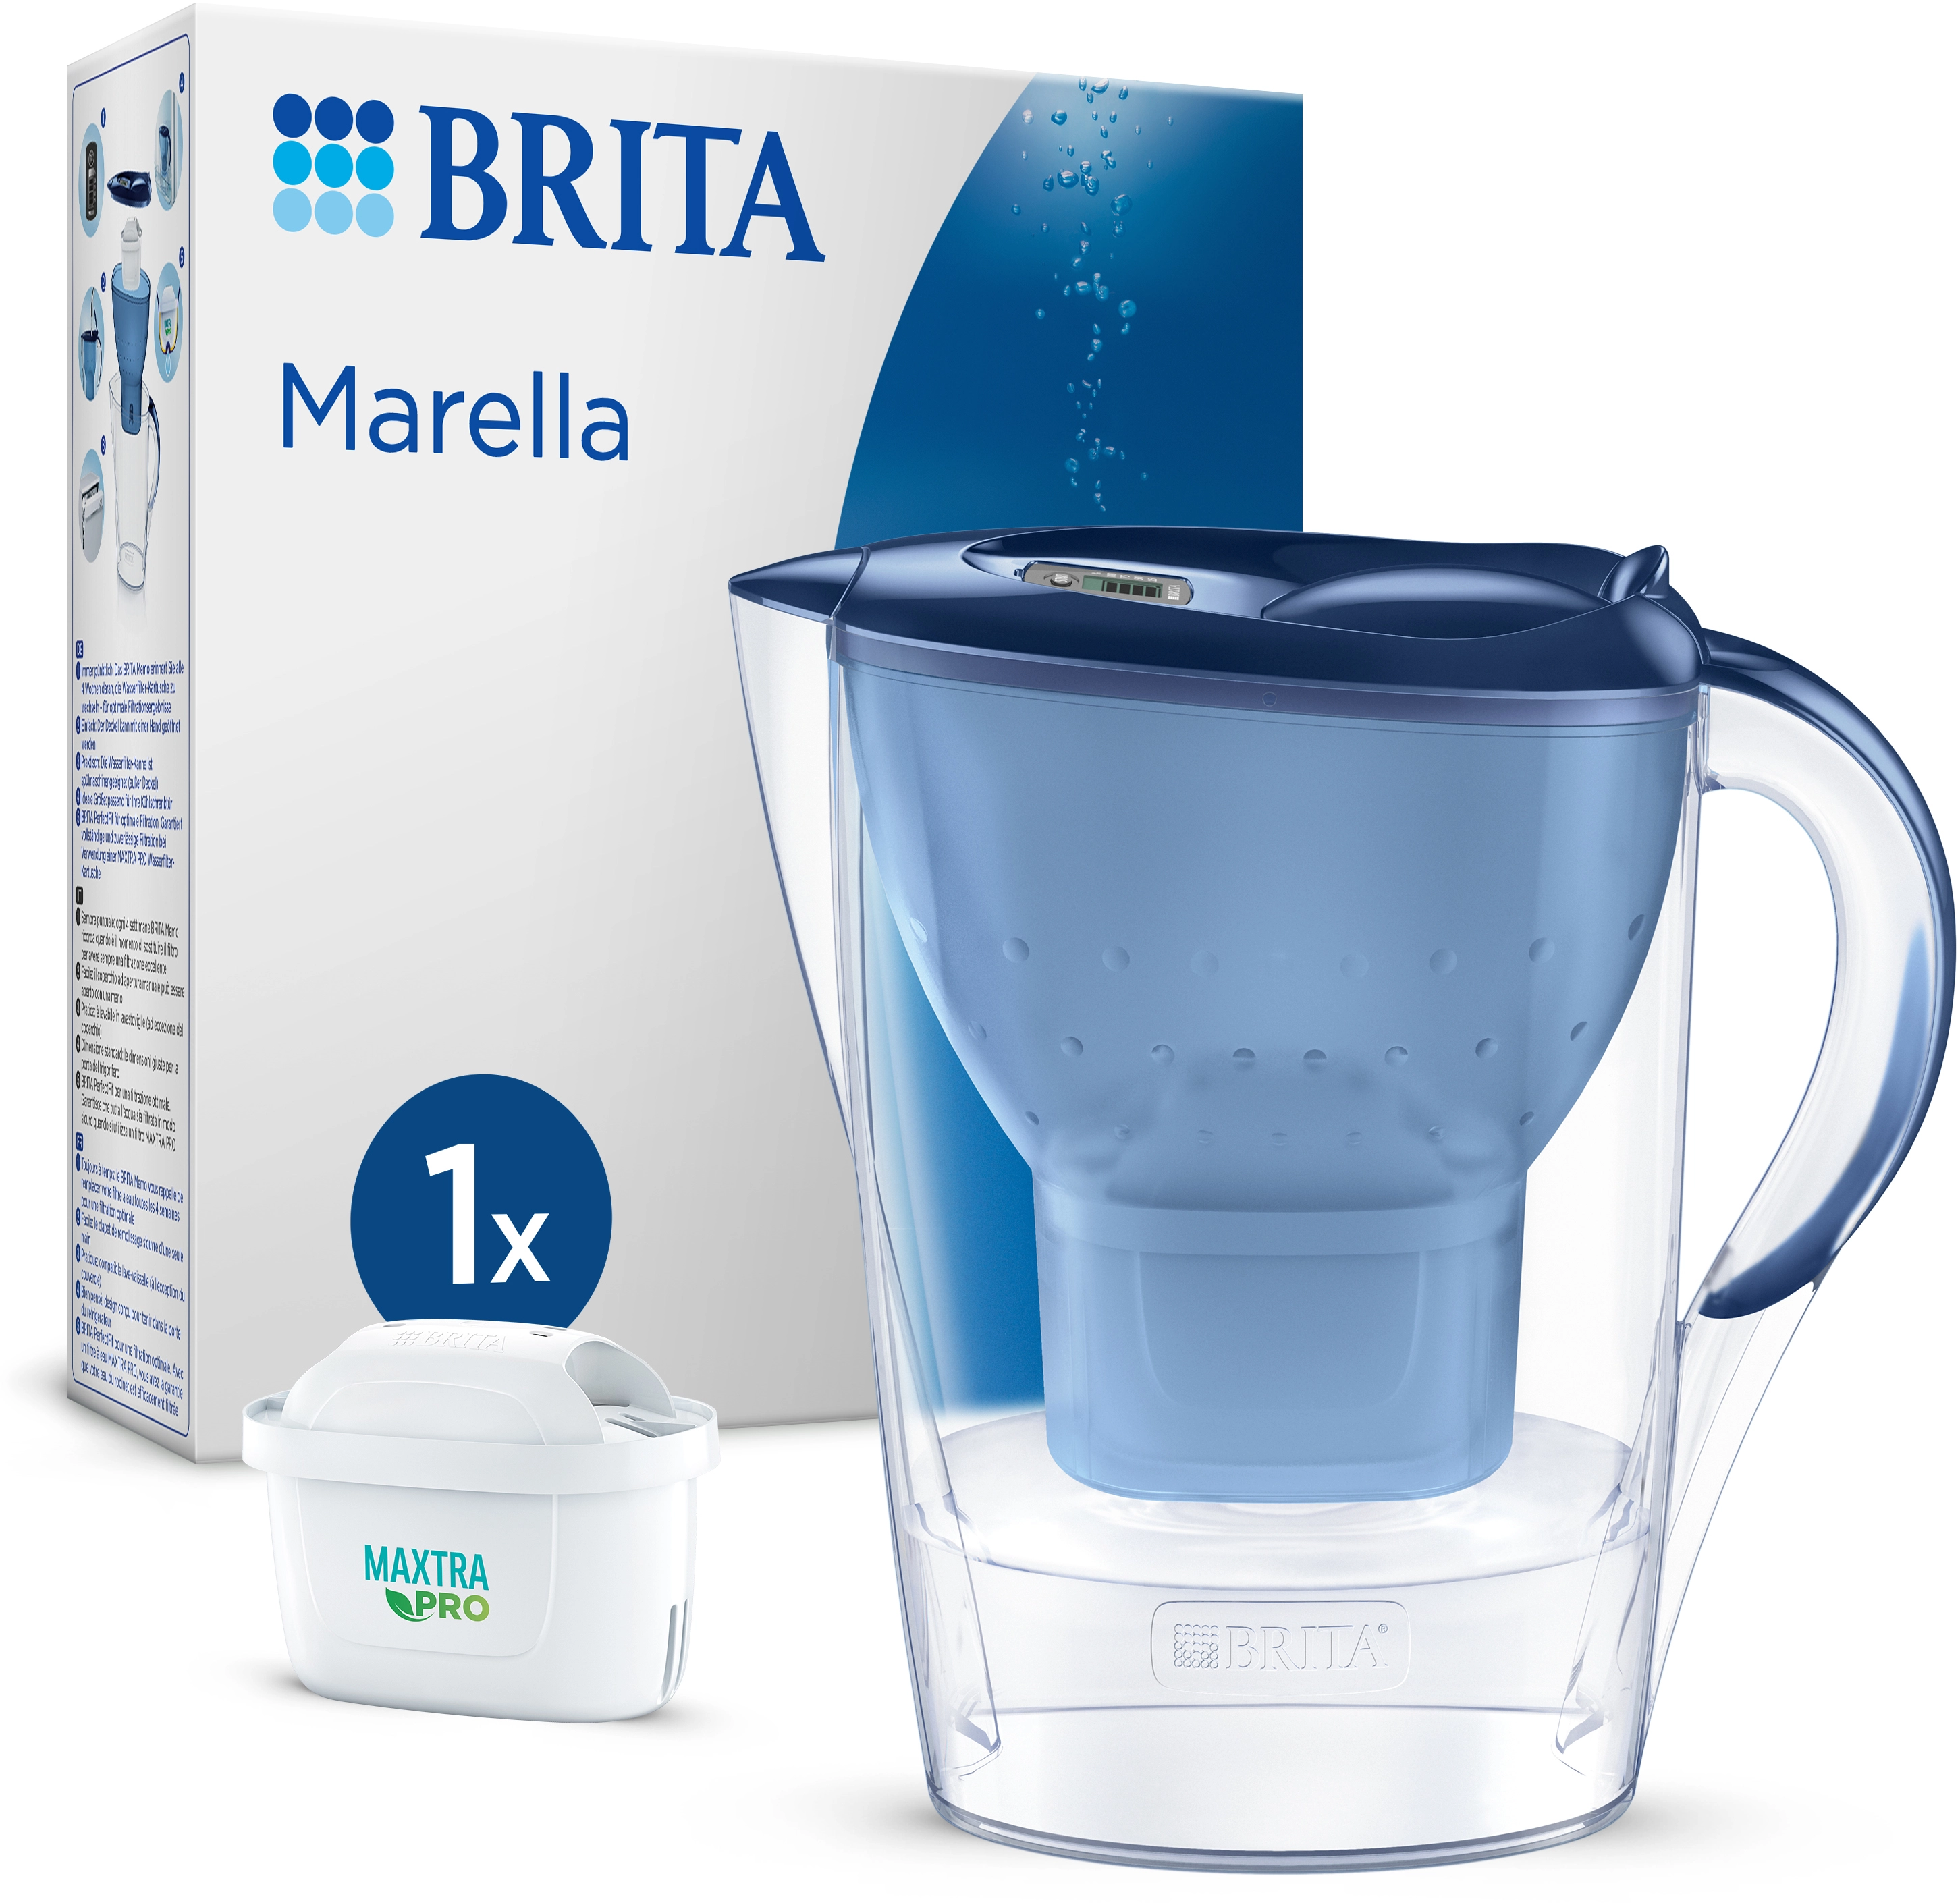 2,4 OBI Kartusche Maxtra All-in-1 Blau Brita bei inkl. Pro l kaufen Marella Wasserfilter-Kanne